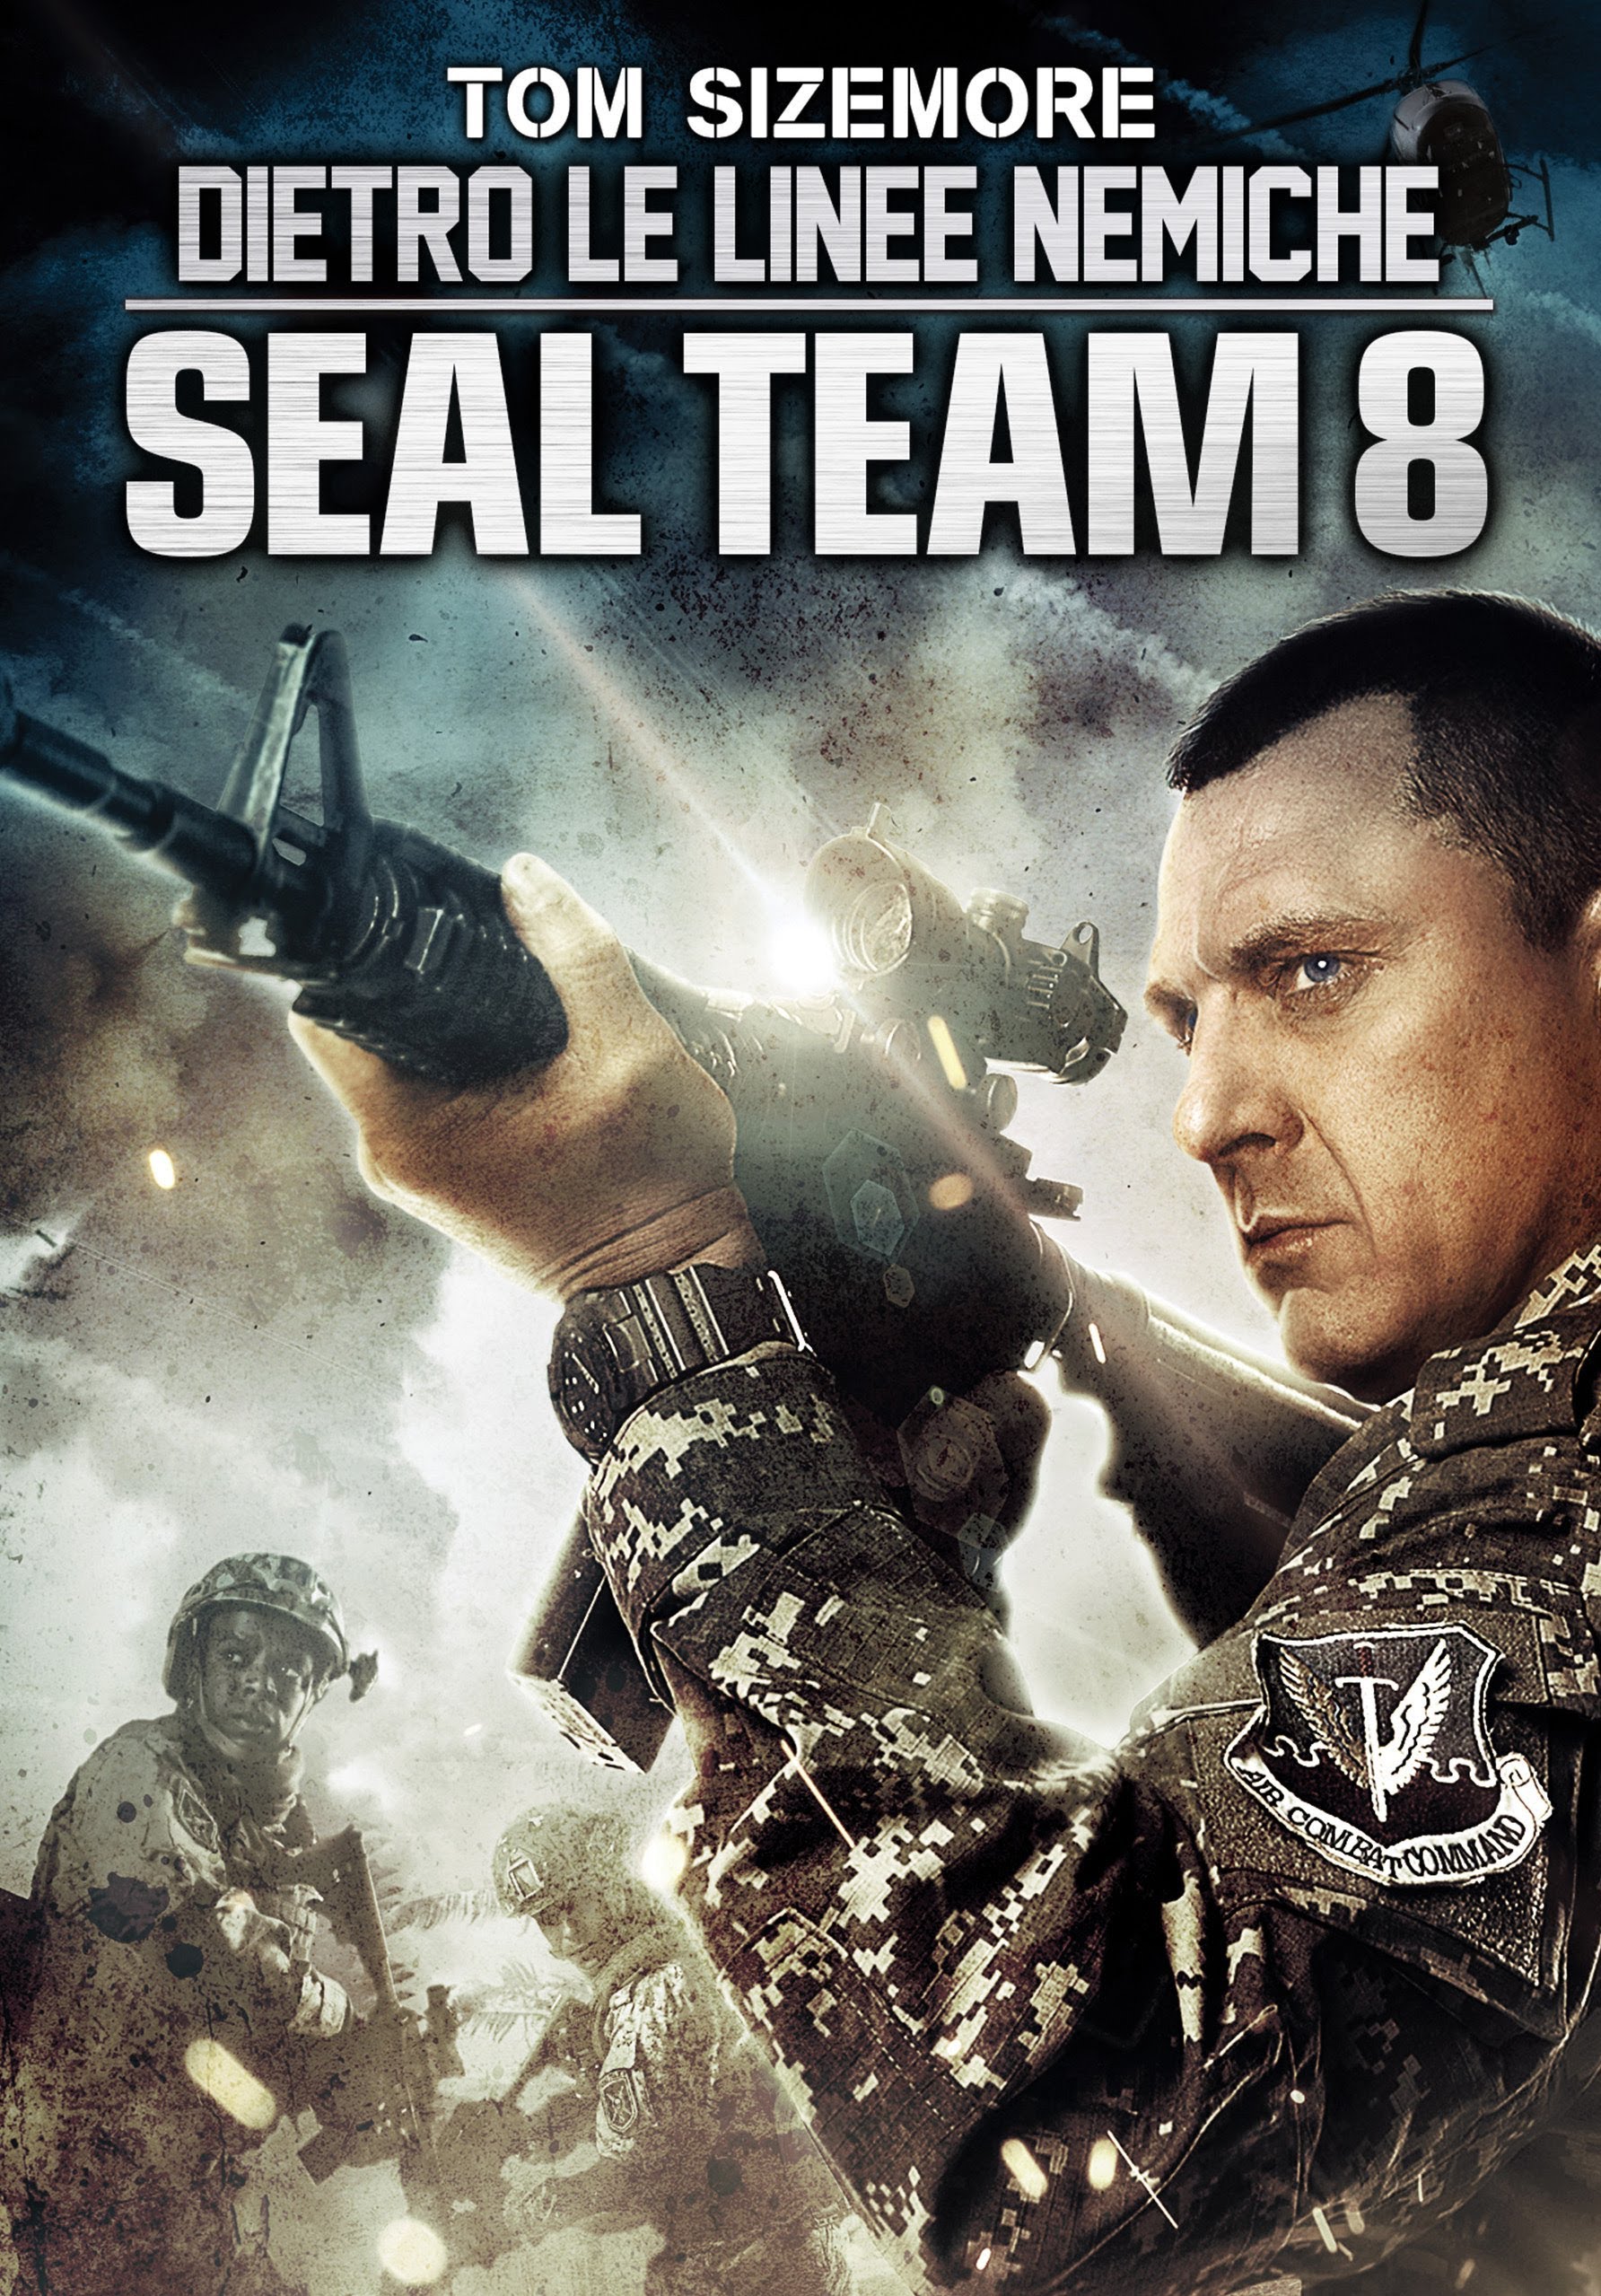 Dietro le Linee Nemiche – Seal Team 8 [HD] (2014)